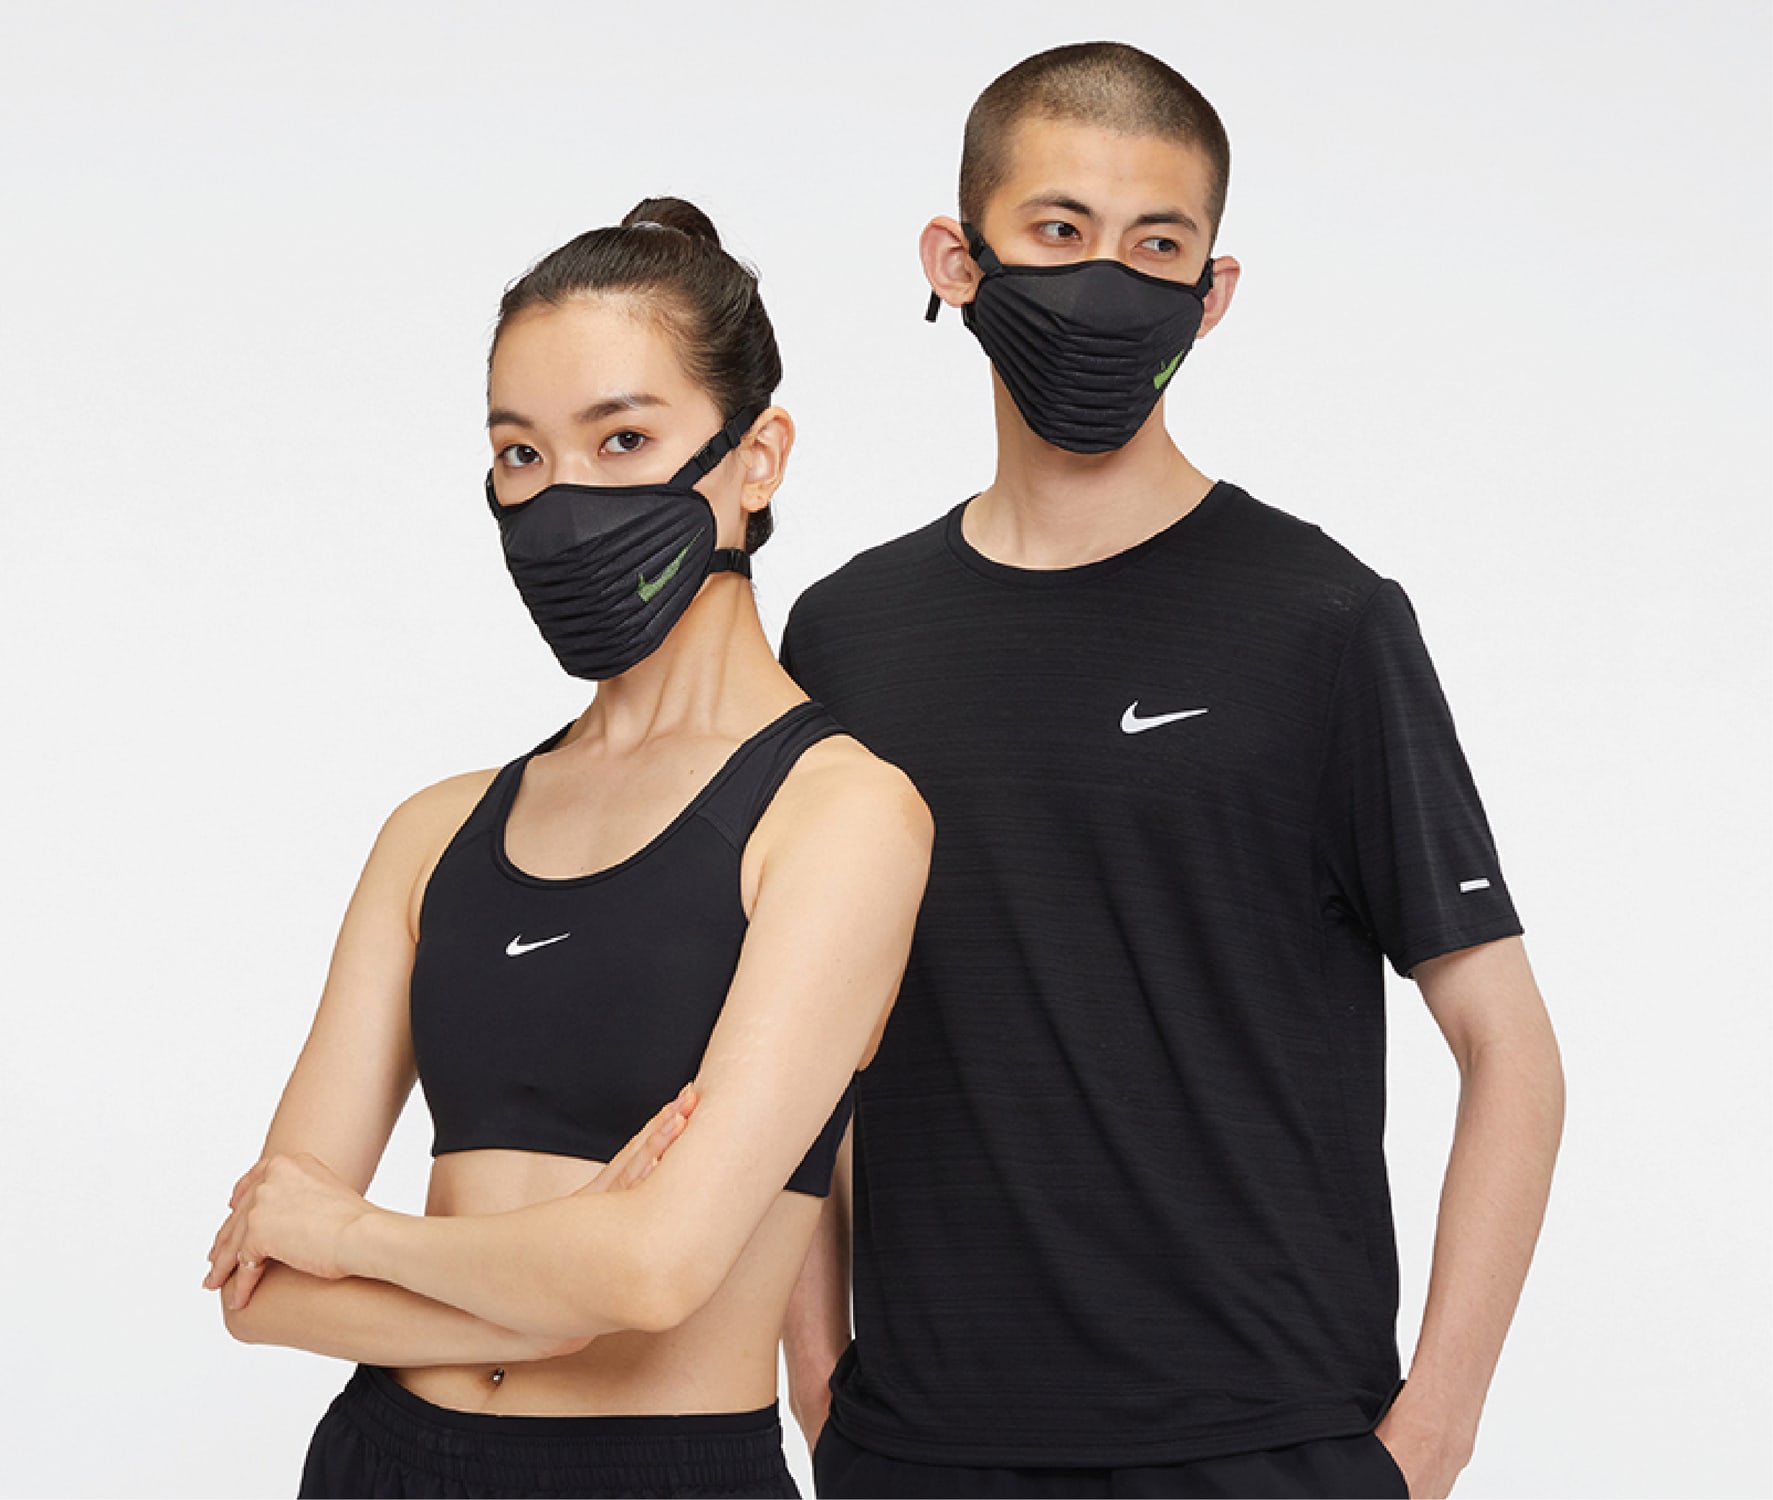 افضل كريم تبيض Venturer Face Mask Size Guide. Nike.com افضل كريم تبيض